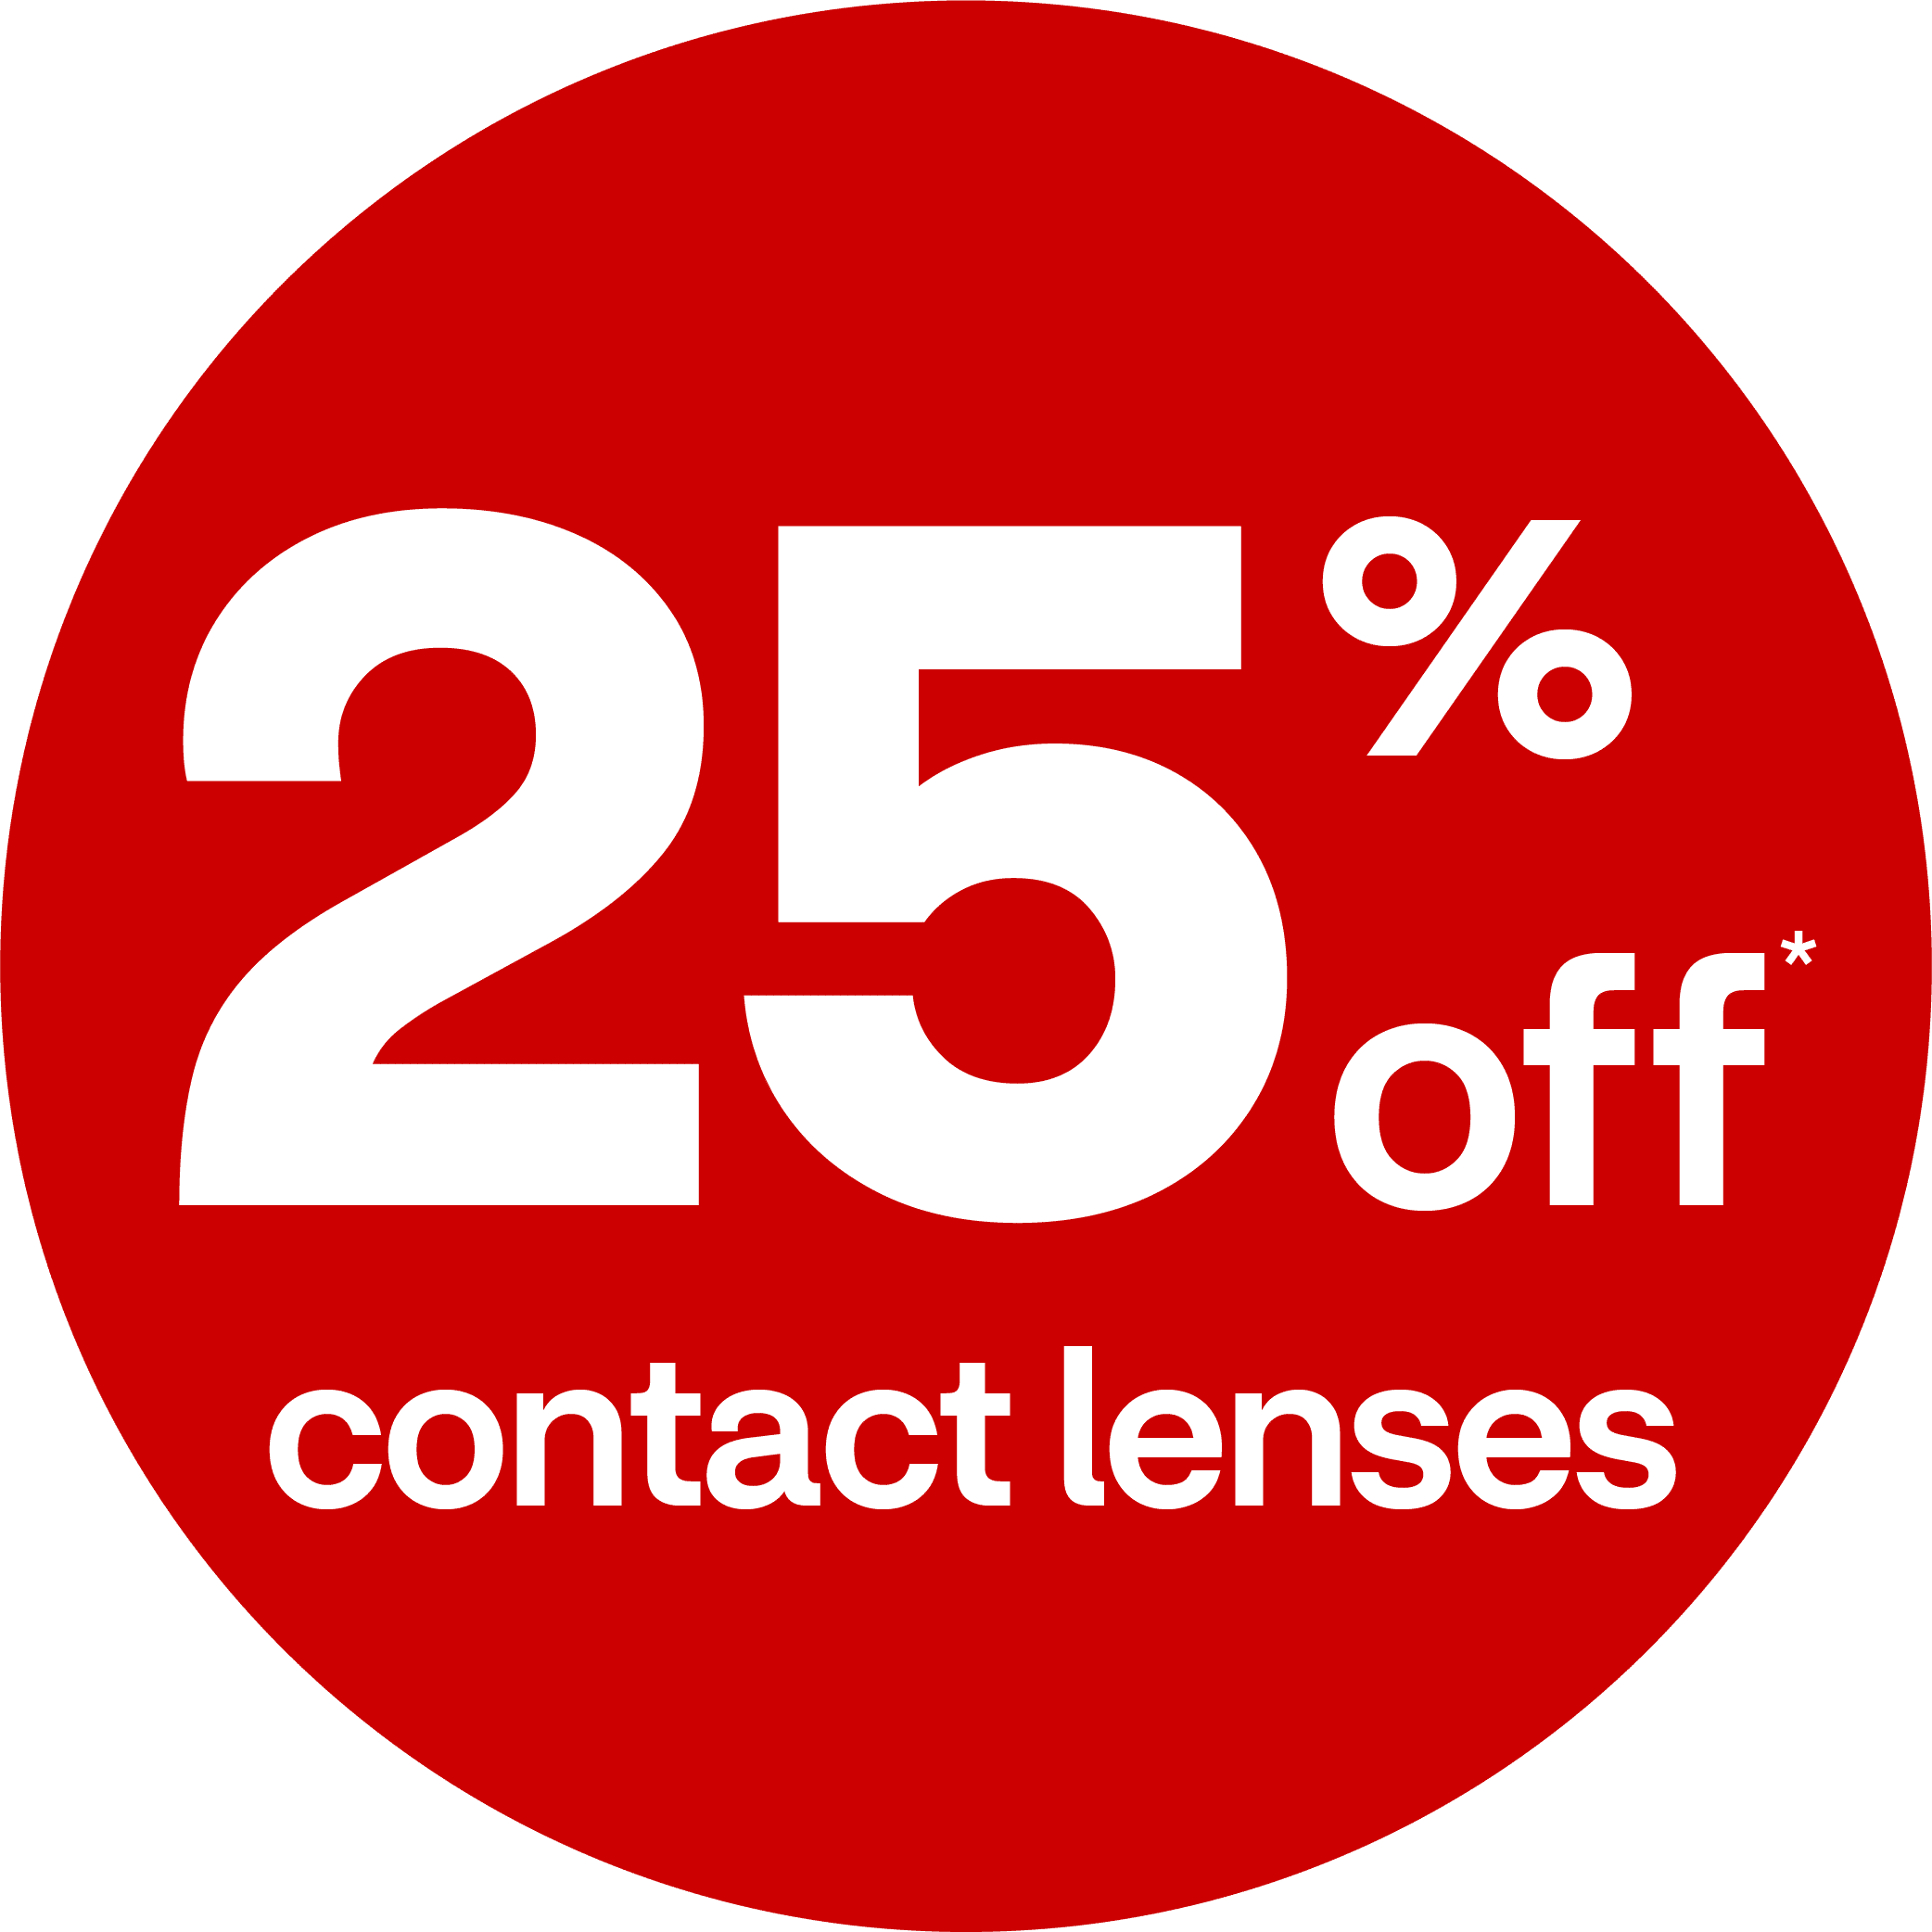 Compre lentes de contacto con hasta el 25 por ciento menos*